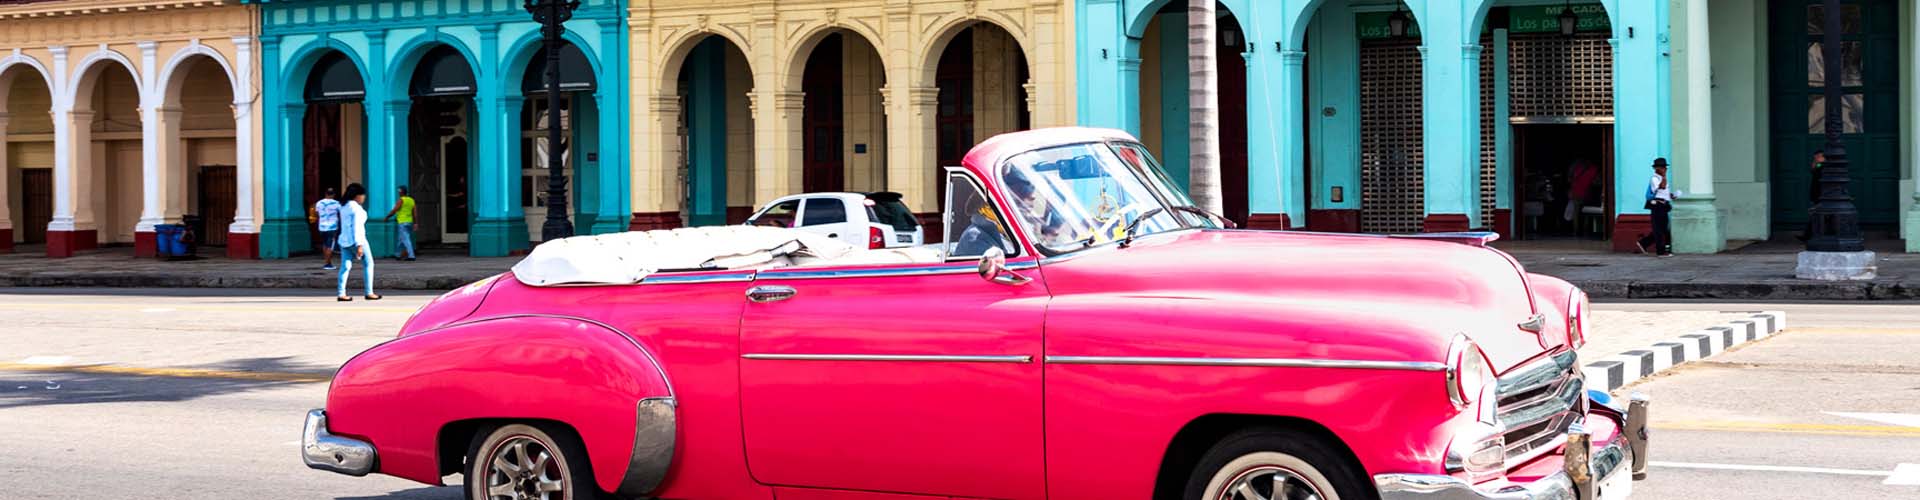 Кубински ретро автомобил